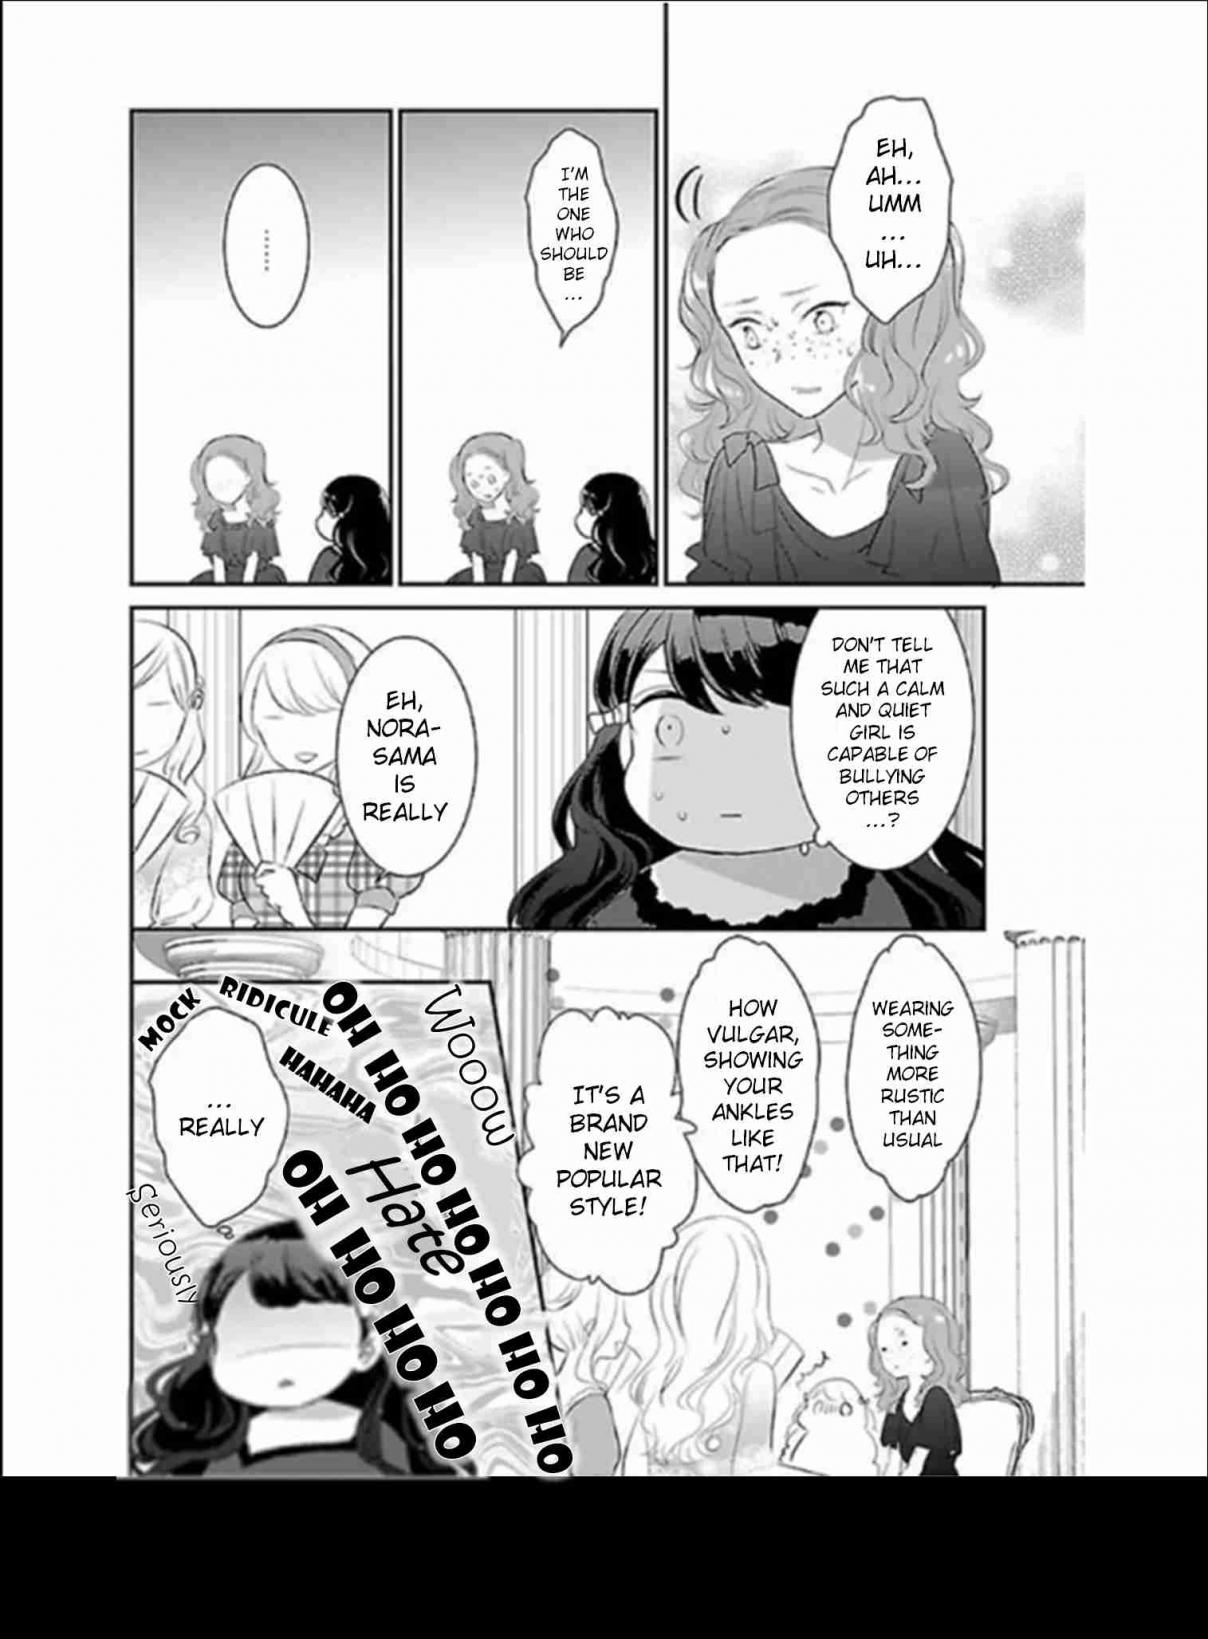 Tensei Saki ga Shoujo Manga no Shiro Buta Reijou datta Vol. 2 Ch. 4